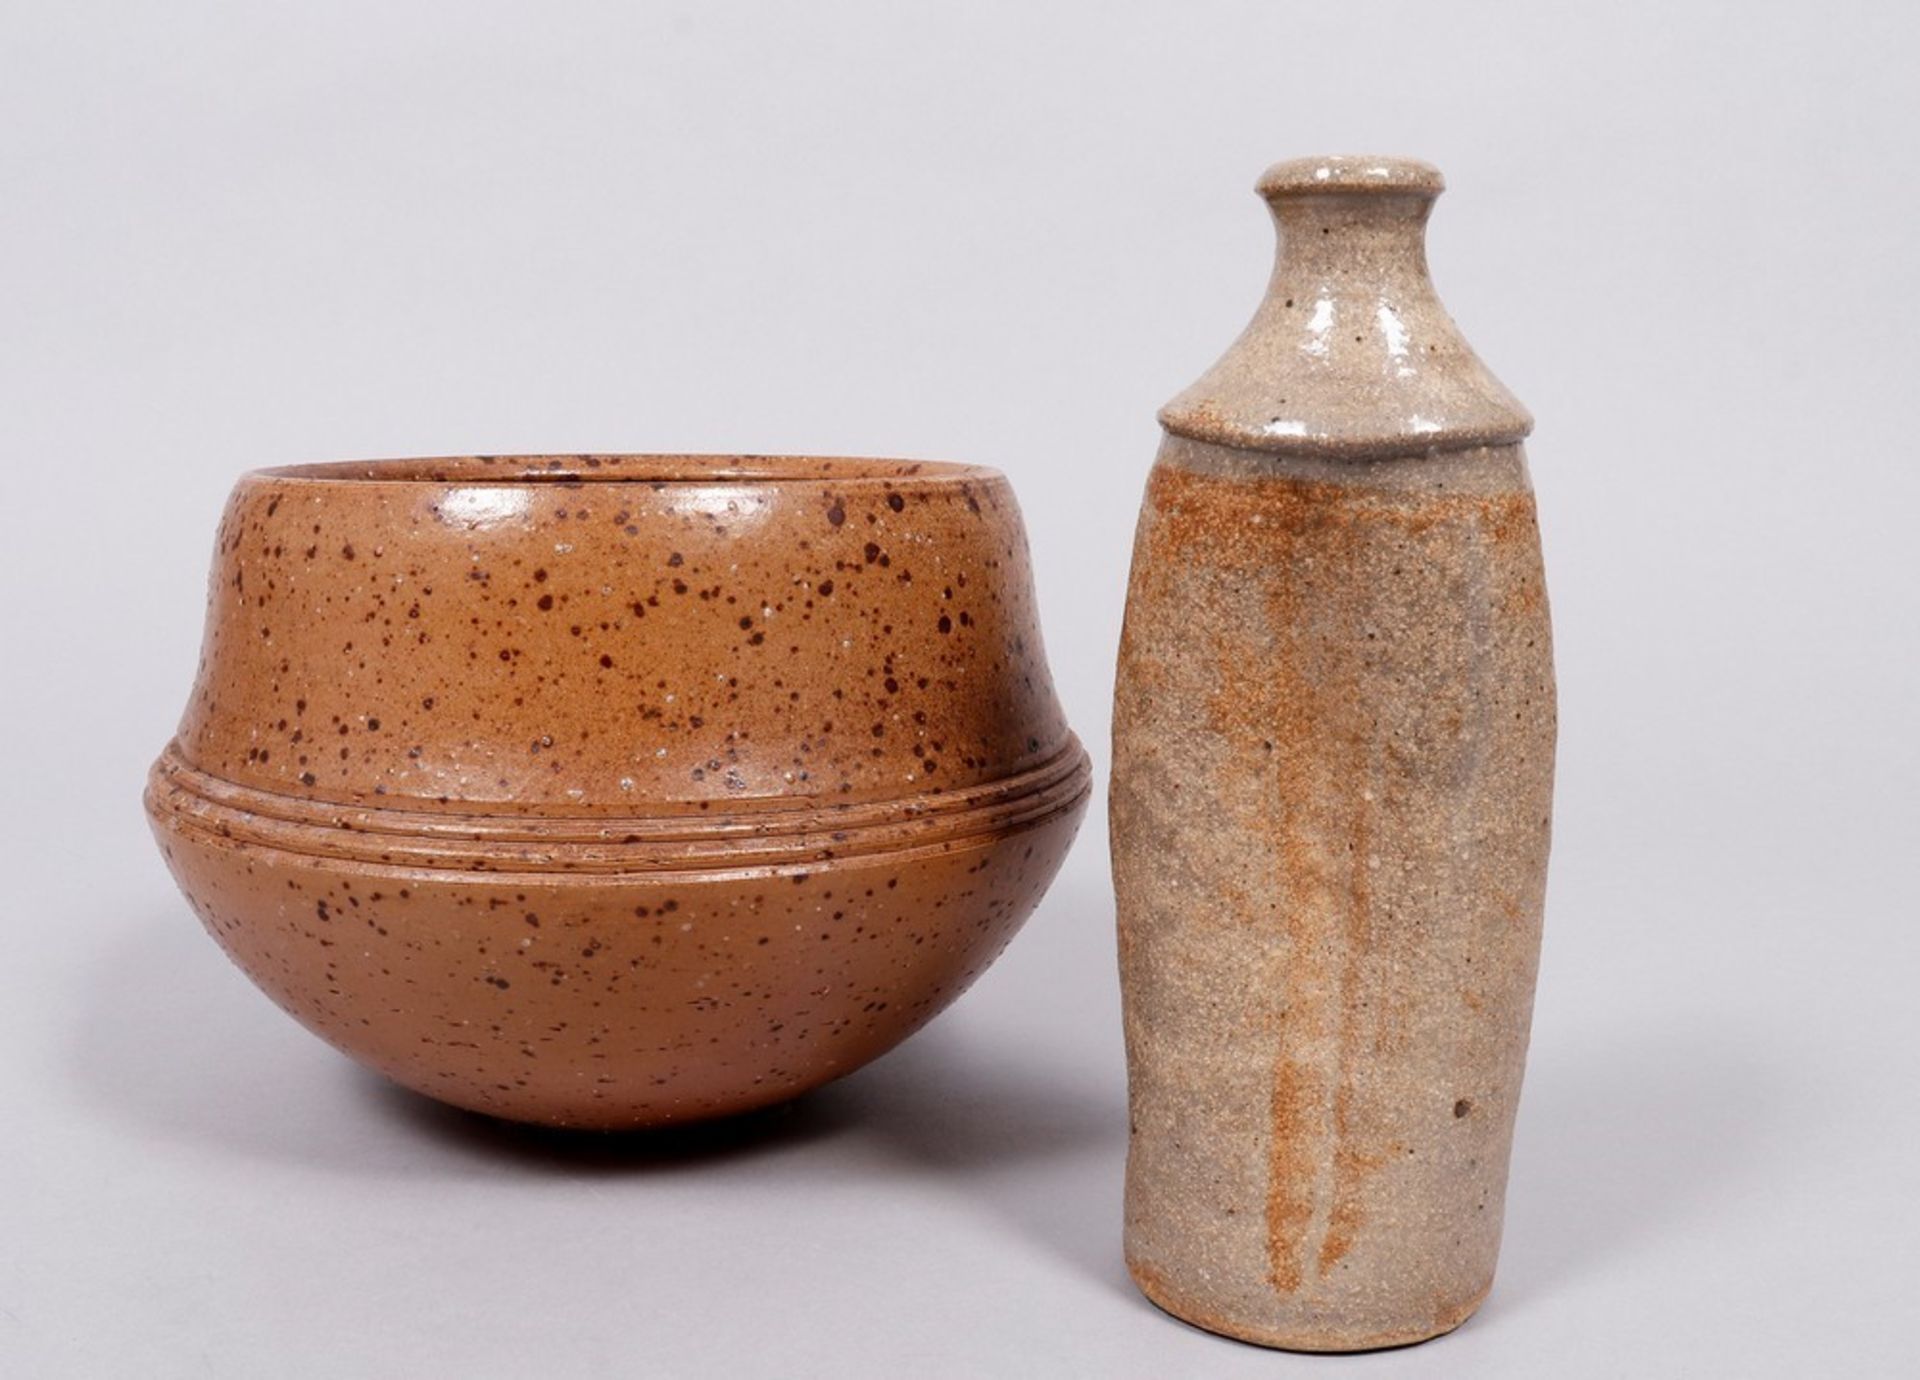 Unknown ceramist, 20th C.